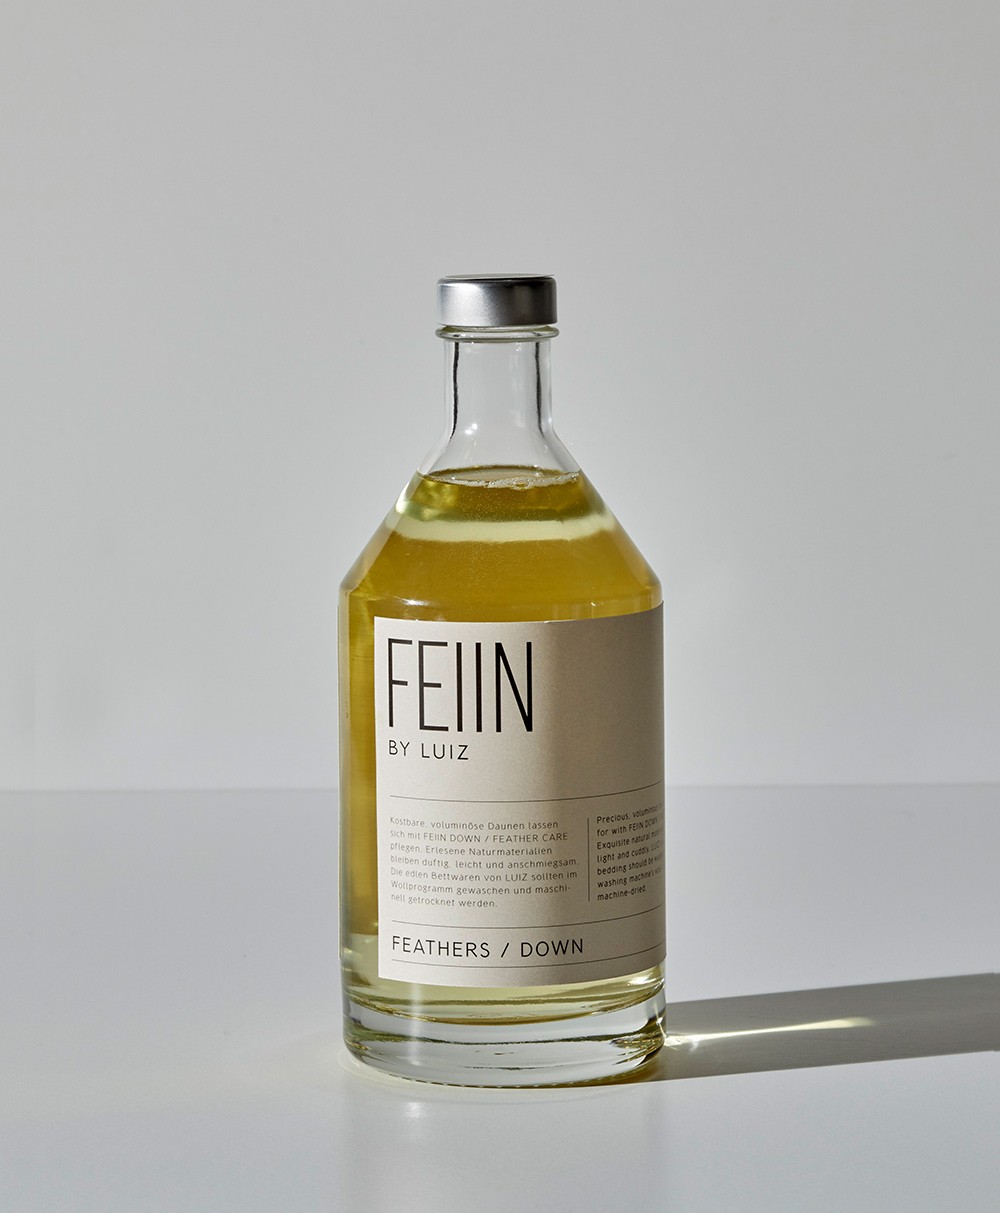 Das Waschmittel „FEIIN by LUIZ - Feathers / Down“ im RAUM concept store 